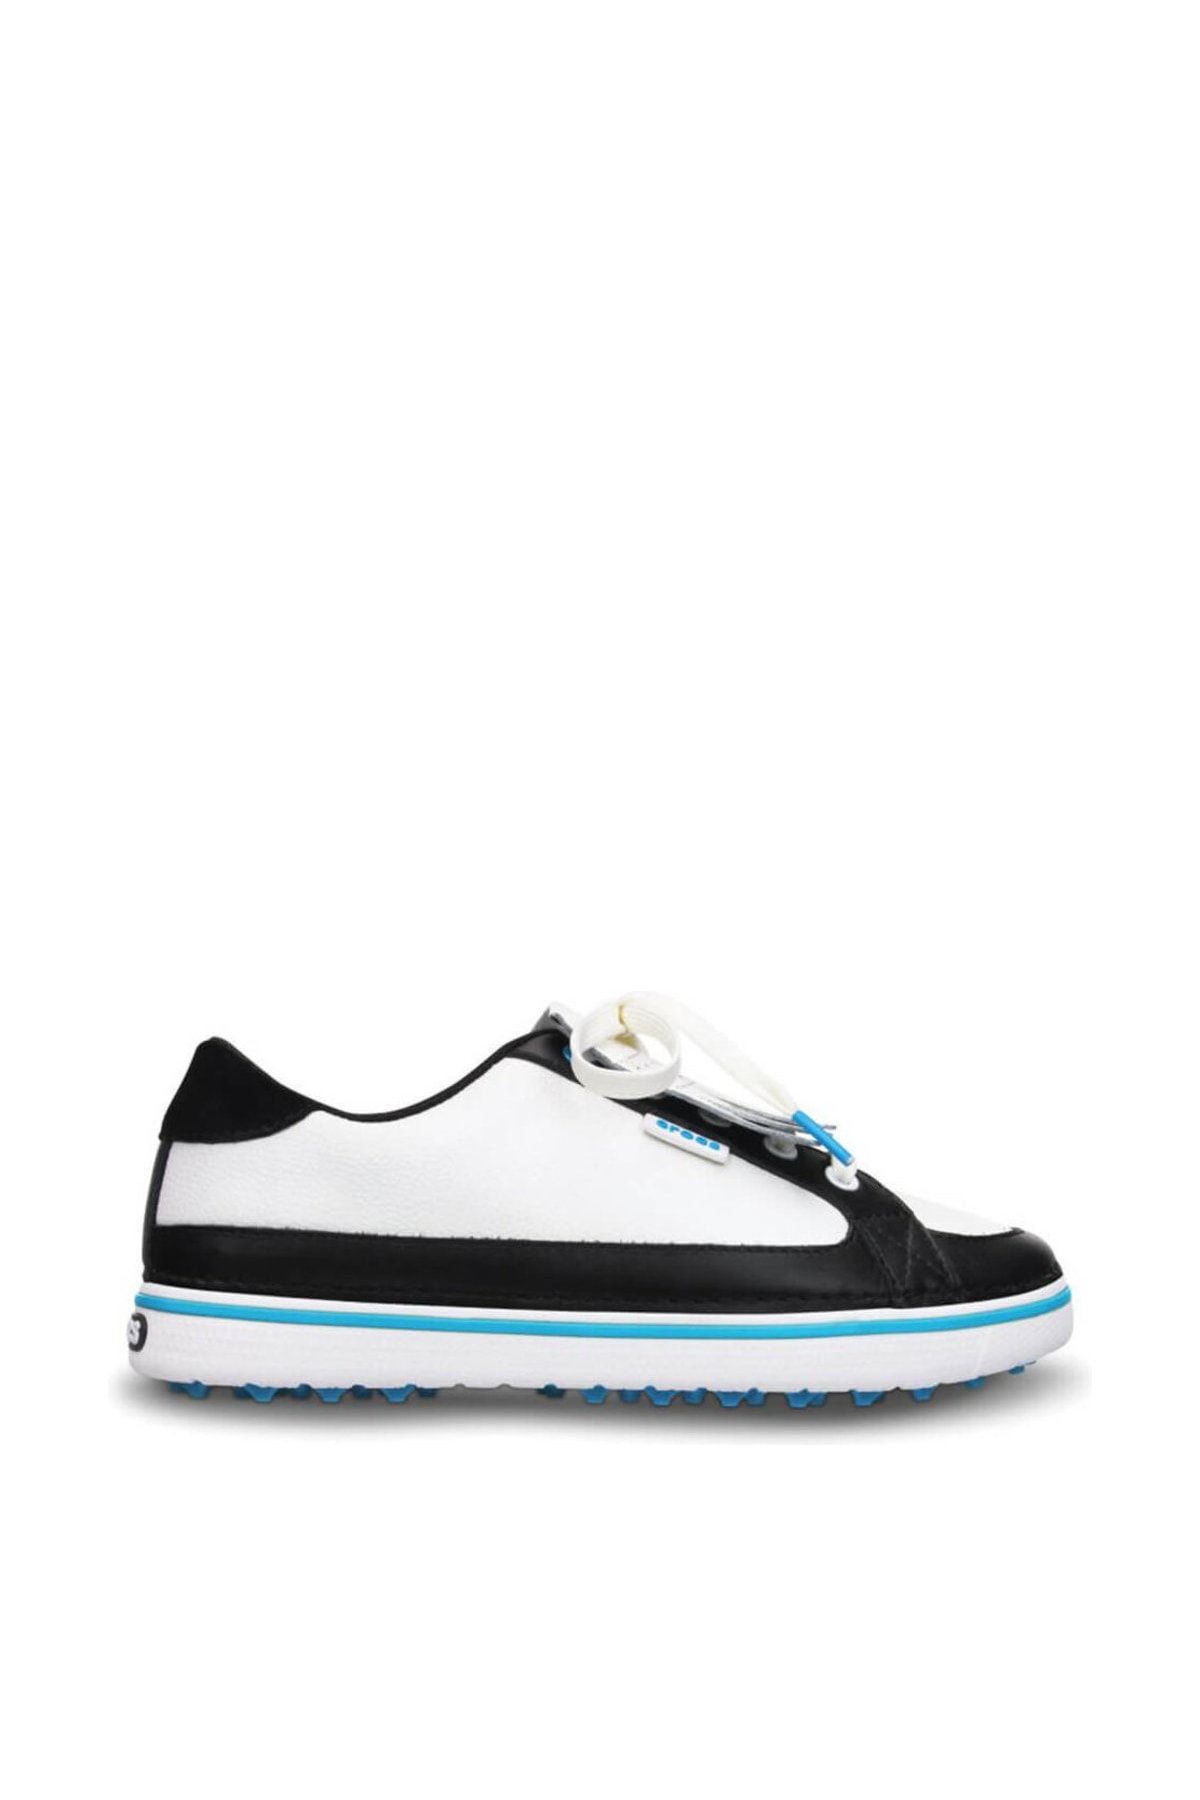 Crocs BRADYN WOMEN Beyaz Kadın Sneaker Ayakkabı 100529225